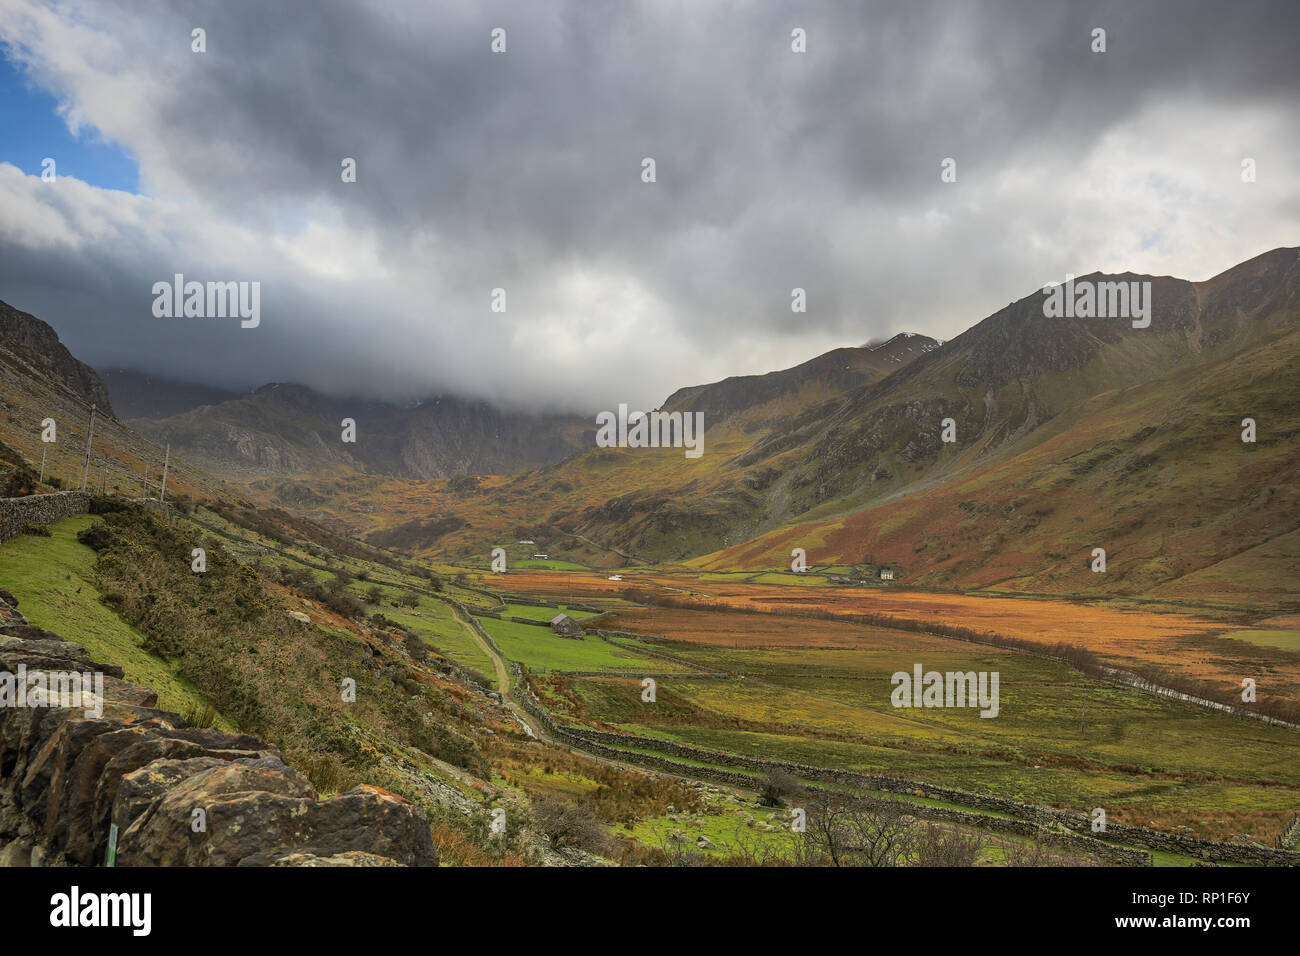 Ikonische, klassische Fotografie Landschaft Blick auf grüne Waliser Tal (ab A5) mit umliegenden Berge von Snowdonia Nationalpark & stürmischen Wolken über. Stockfoto